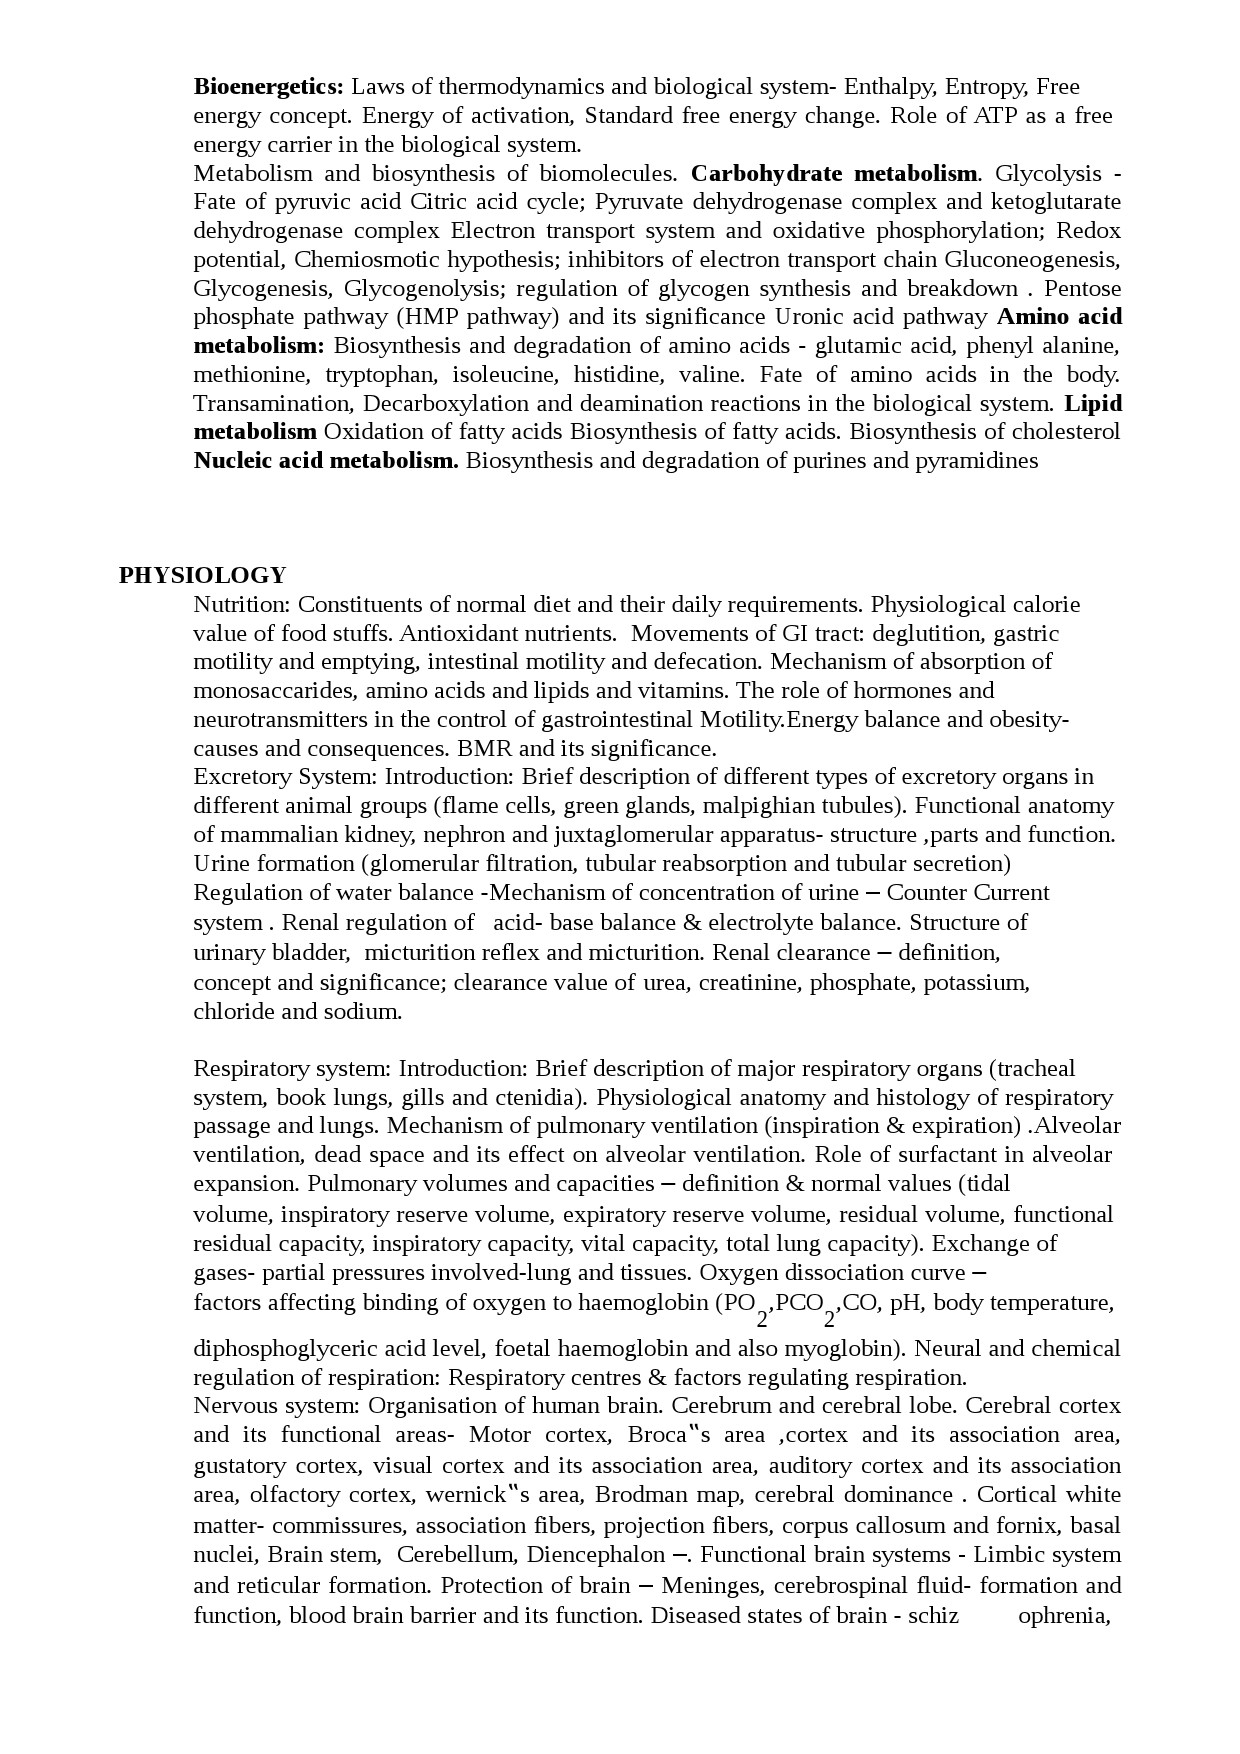 KPSC Syllabus 2021 Scientific Officer Biology - Notification Image 5